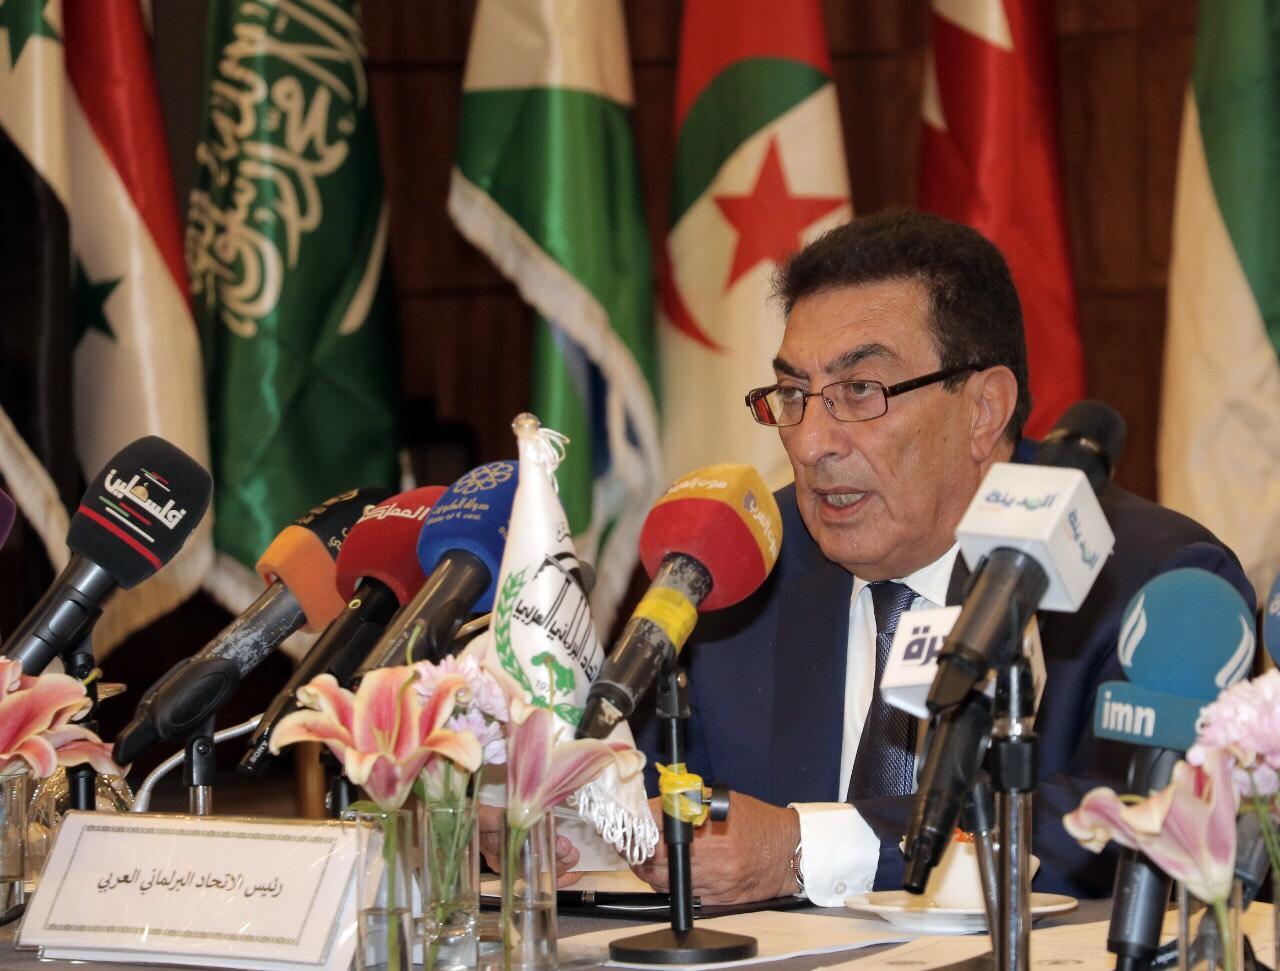 رئيس الاتحاد البرلماني العربي عاطف الطراونة خلال ترؤسه اجتماعات اللجنة التنفيذية. (الاتحاد البرلماني العربي)